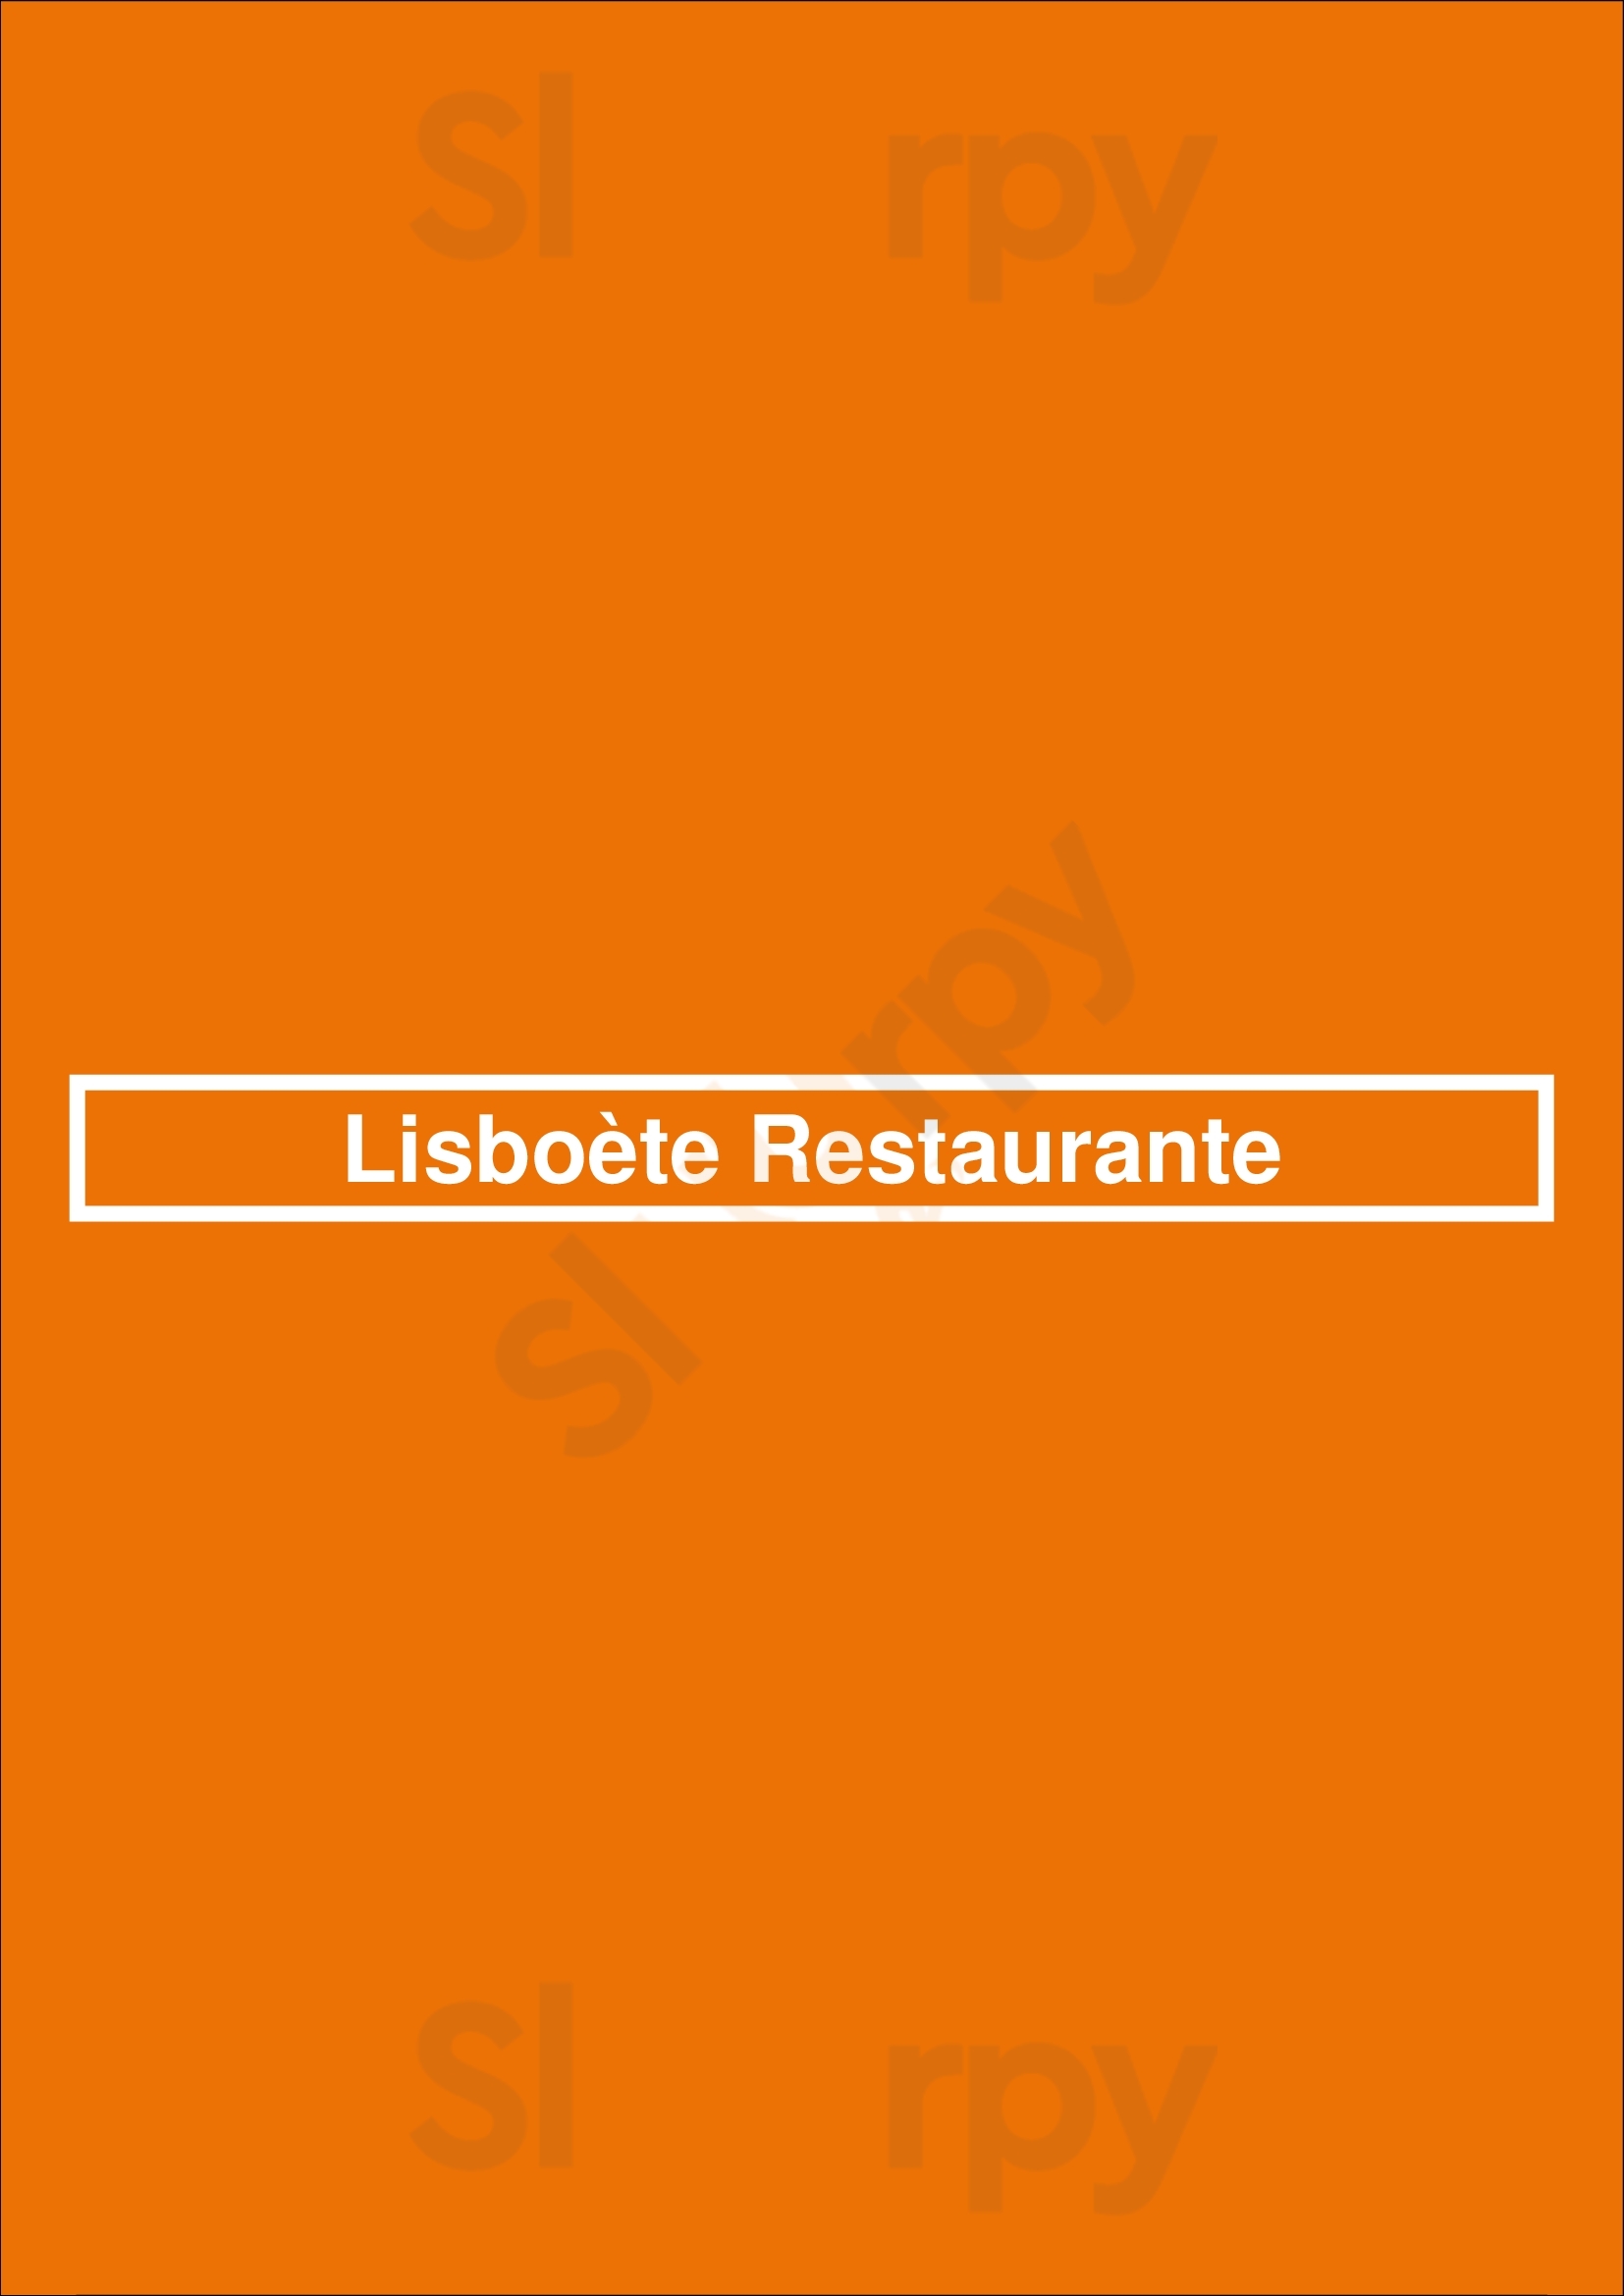 Lisboète Restaurante Lisboa Menu - 1